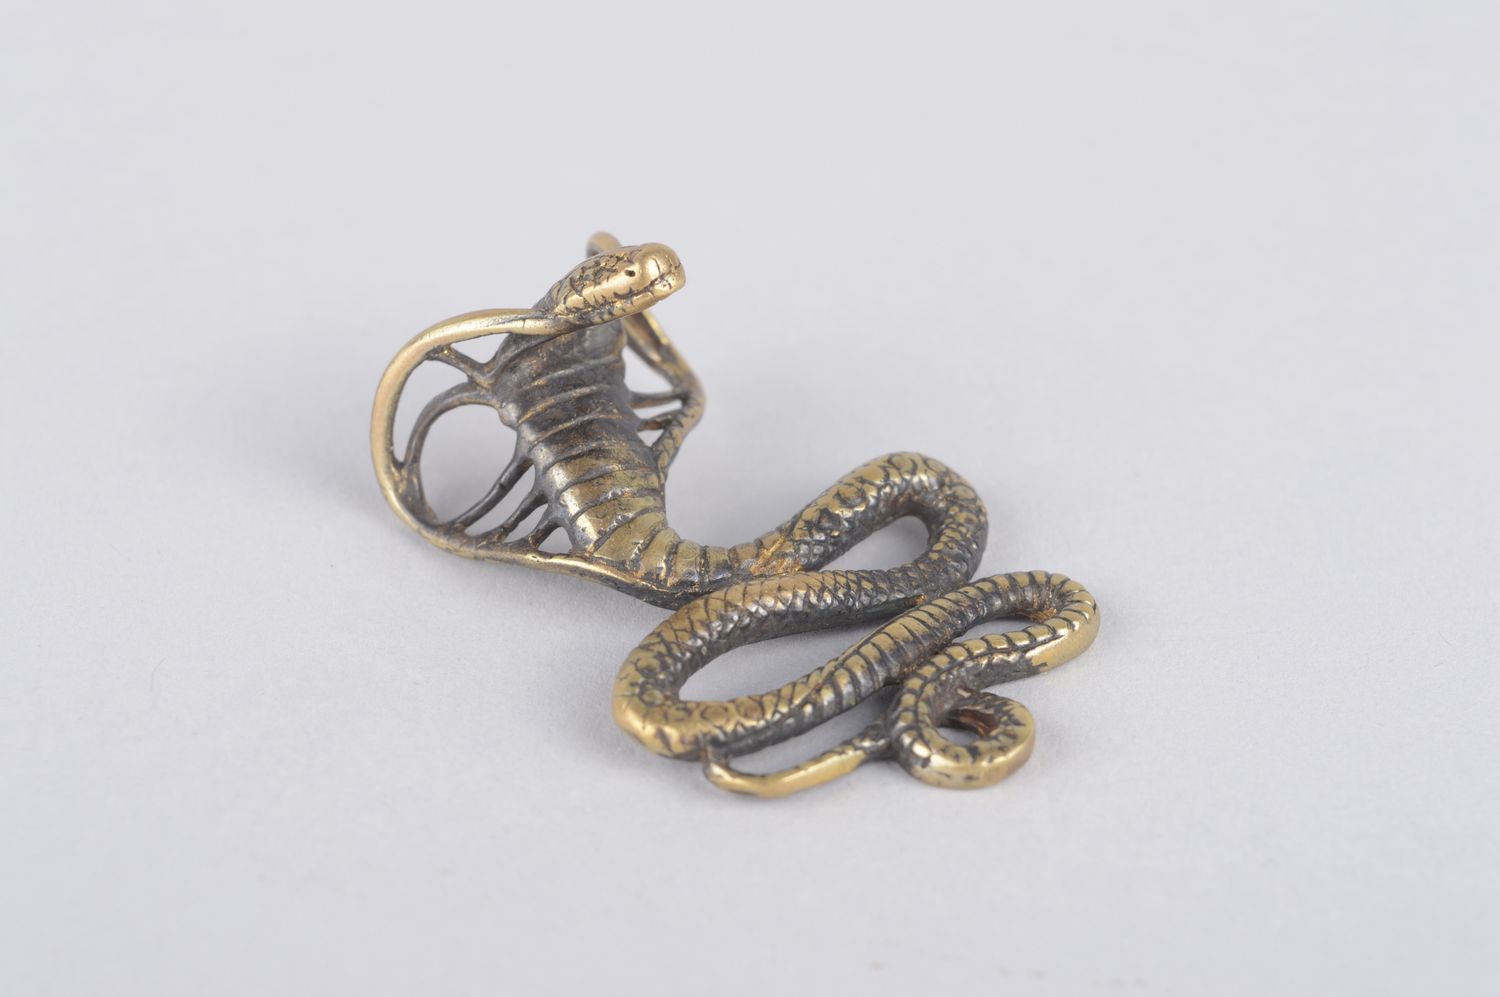 Bronze pendant handmade bronze jewelry metal pendant on cord designer jewelry photo 3